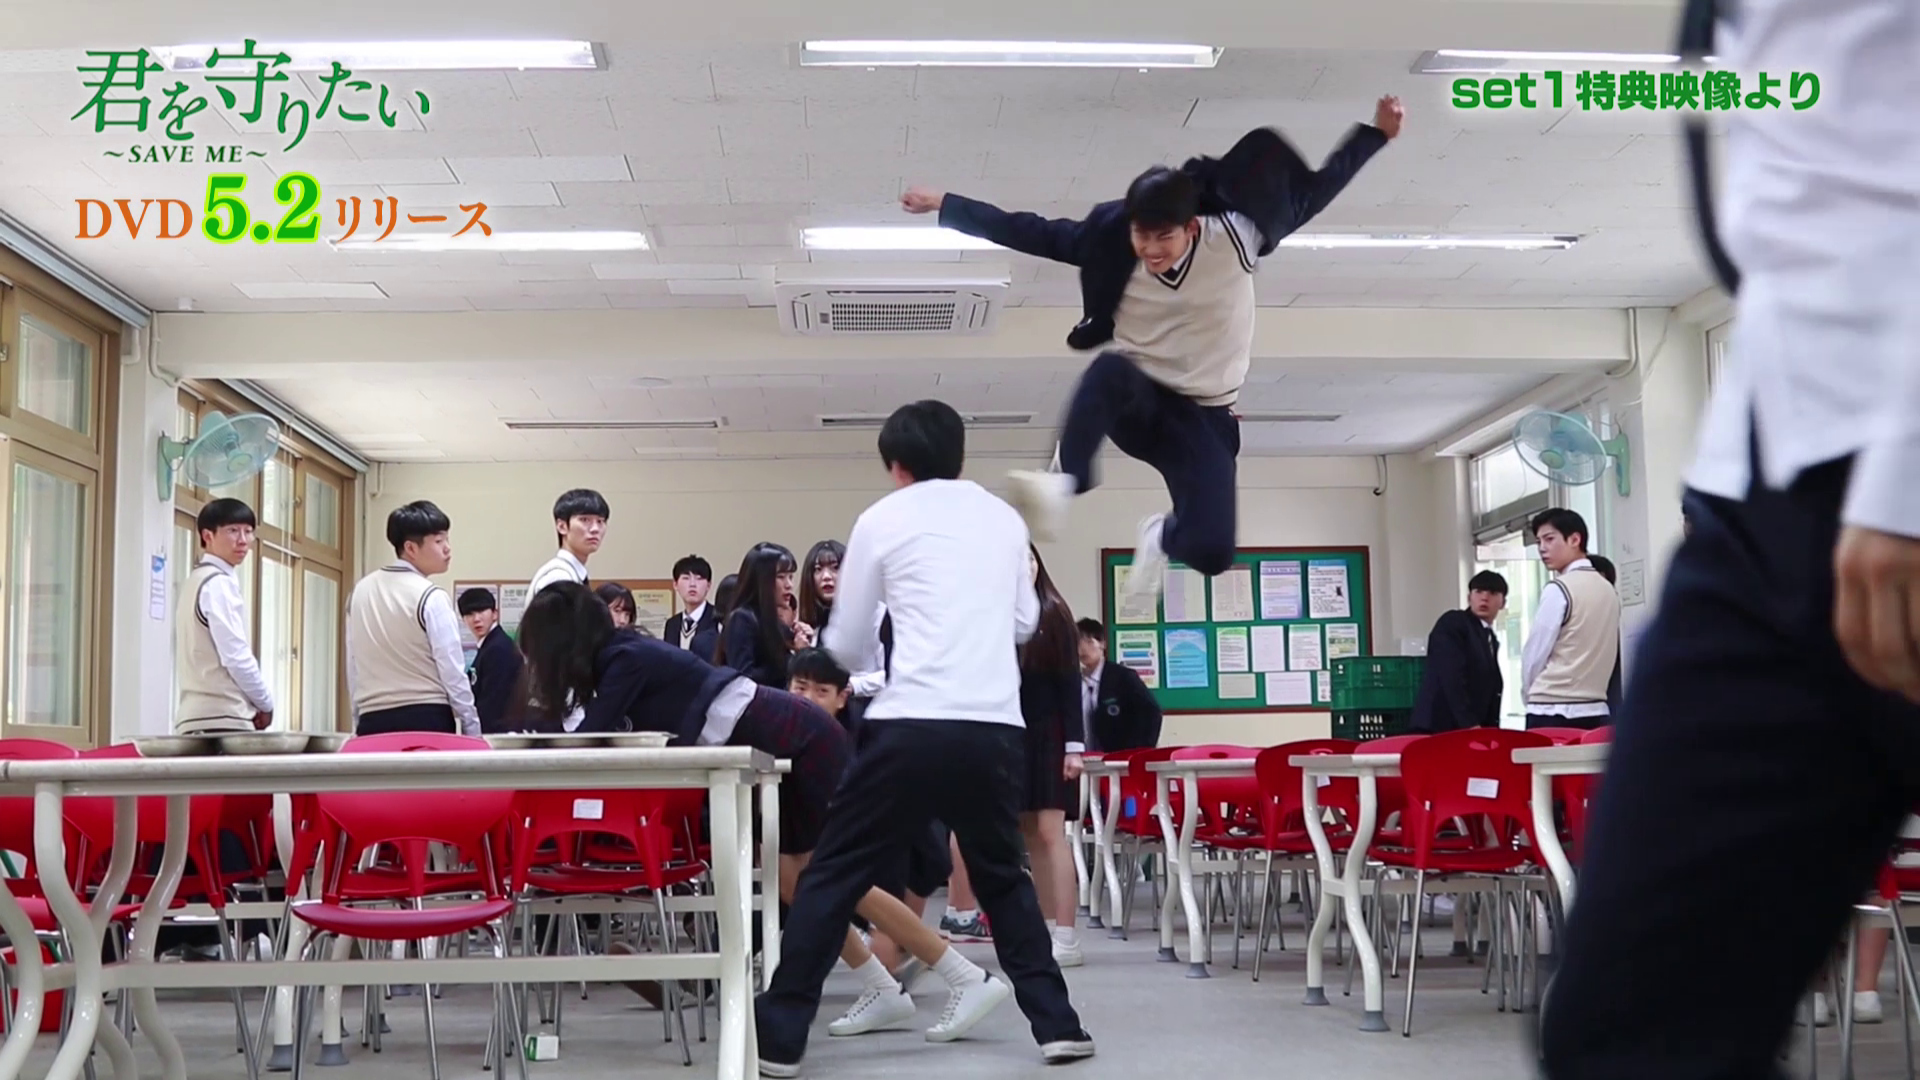 2PM テギョン、ジャンプが高すぎて危険！？「君を守りたい～SAVE ME～」教室でのアクションシーンのメイキング映像を公開 - Kstyle